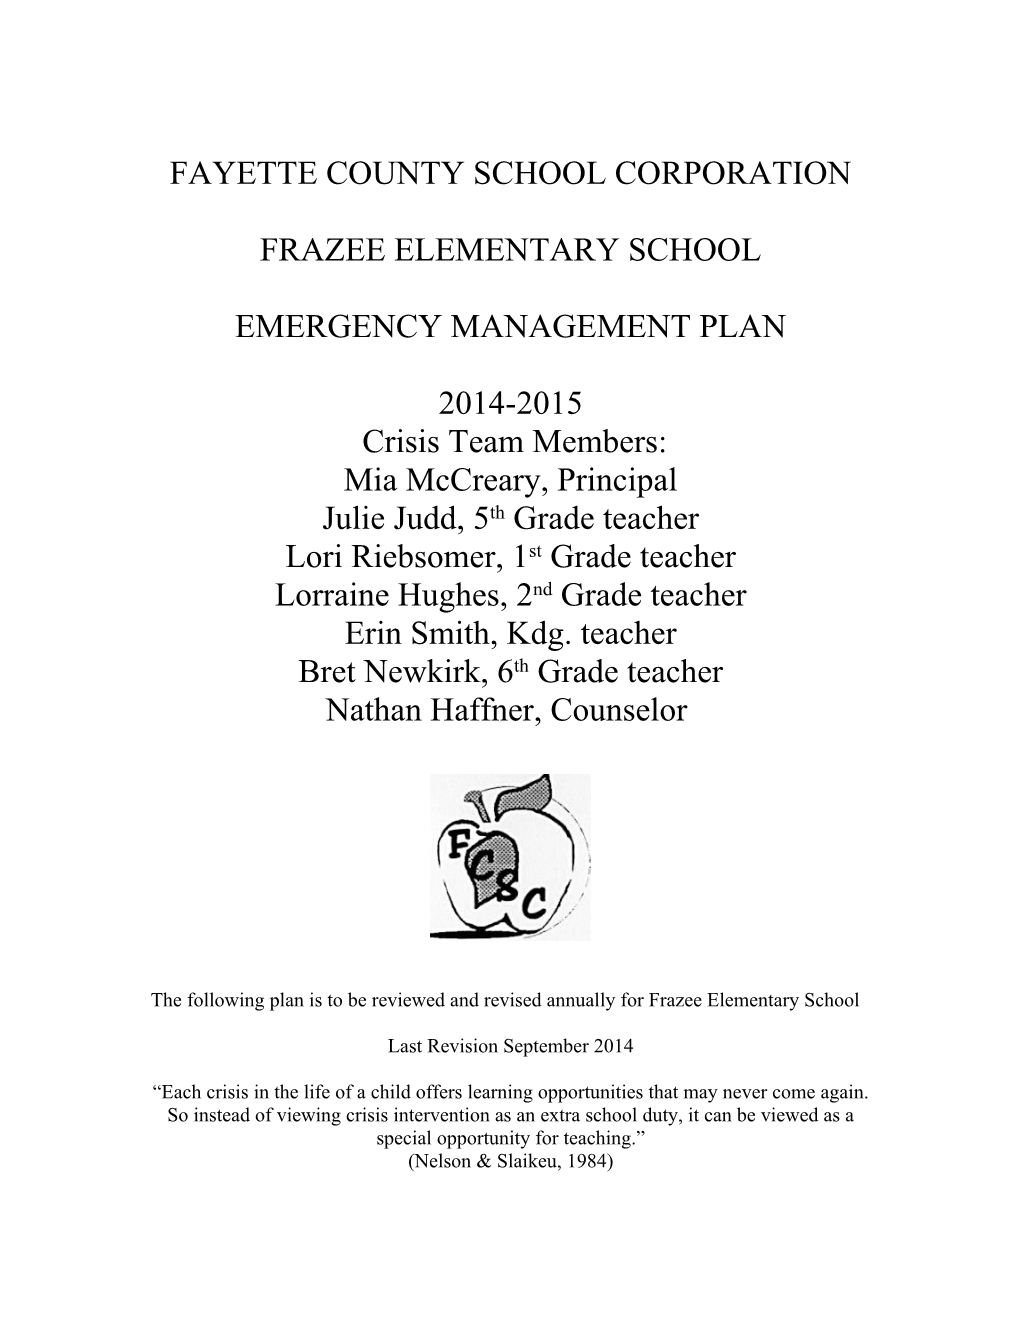 Fayette County School Corporation